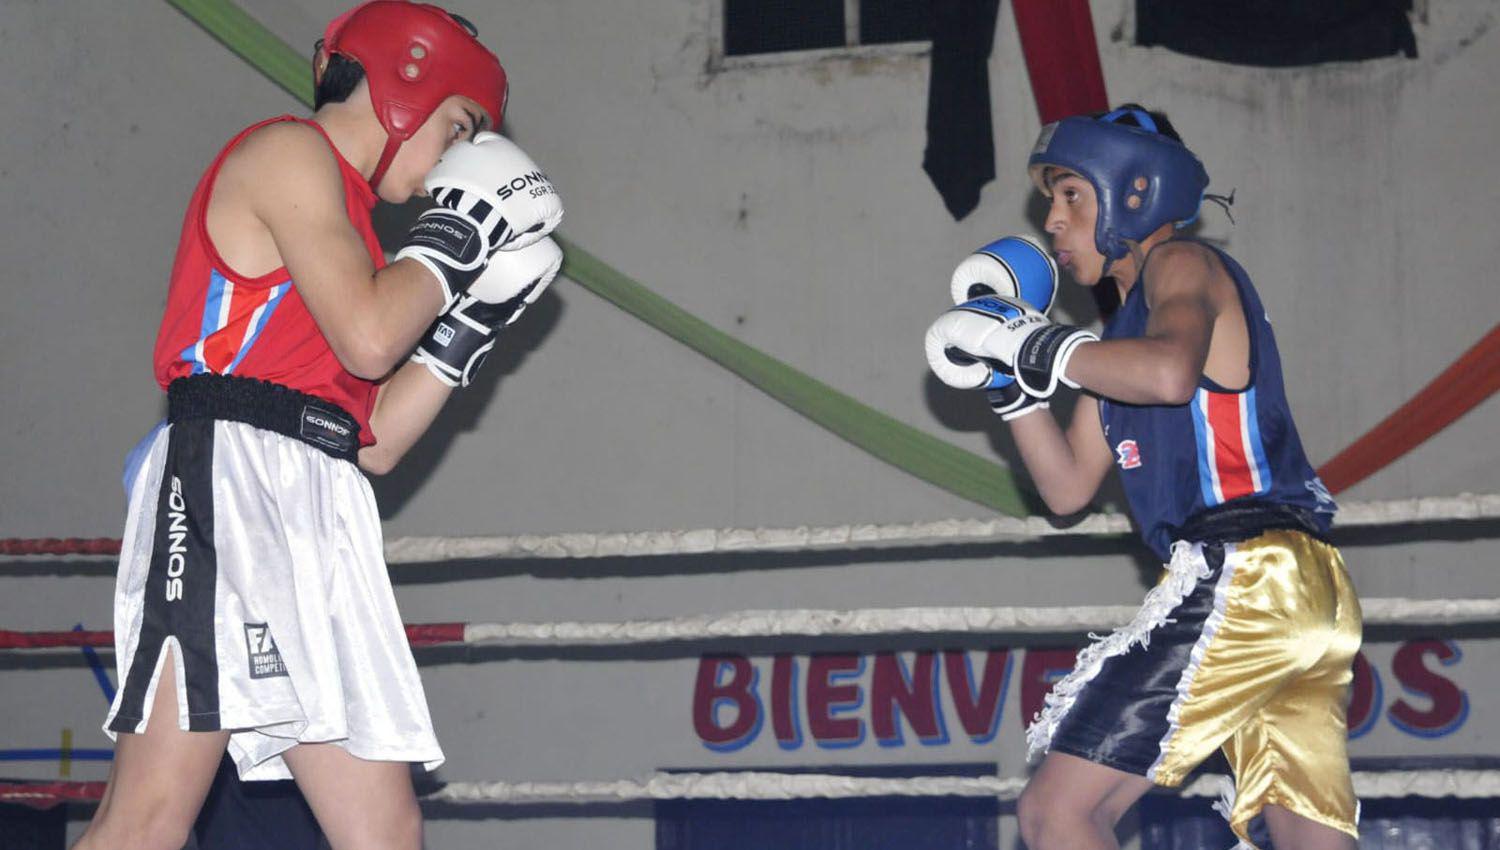 Debutaron ocho joacutevenes boxeadores locales en una velada en Fernaacutendez